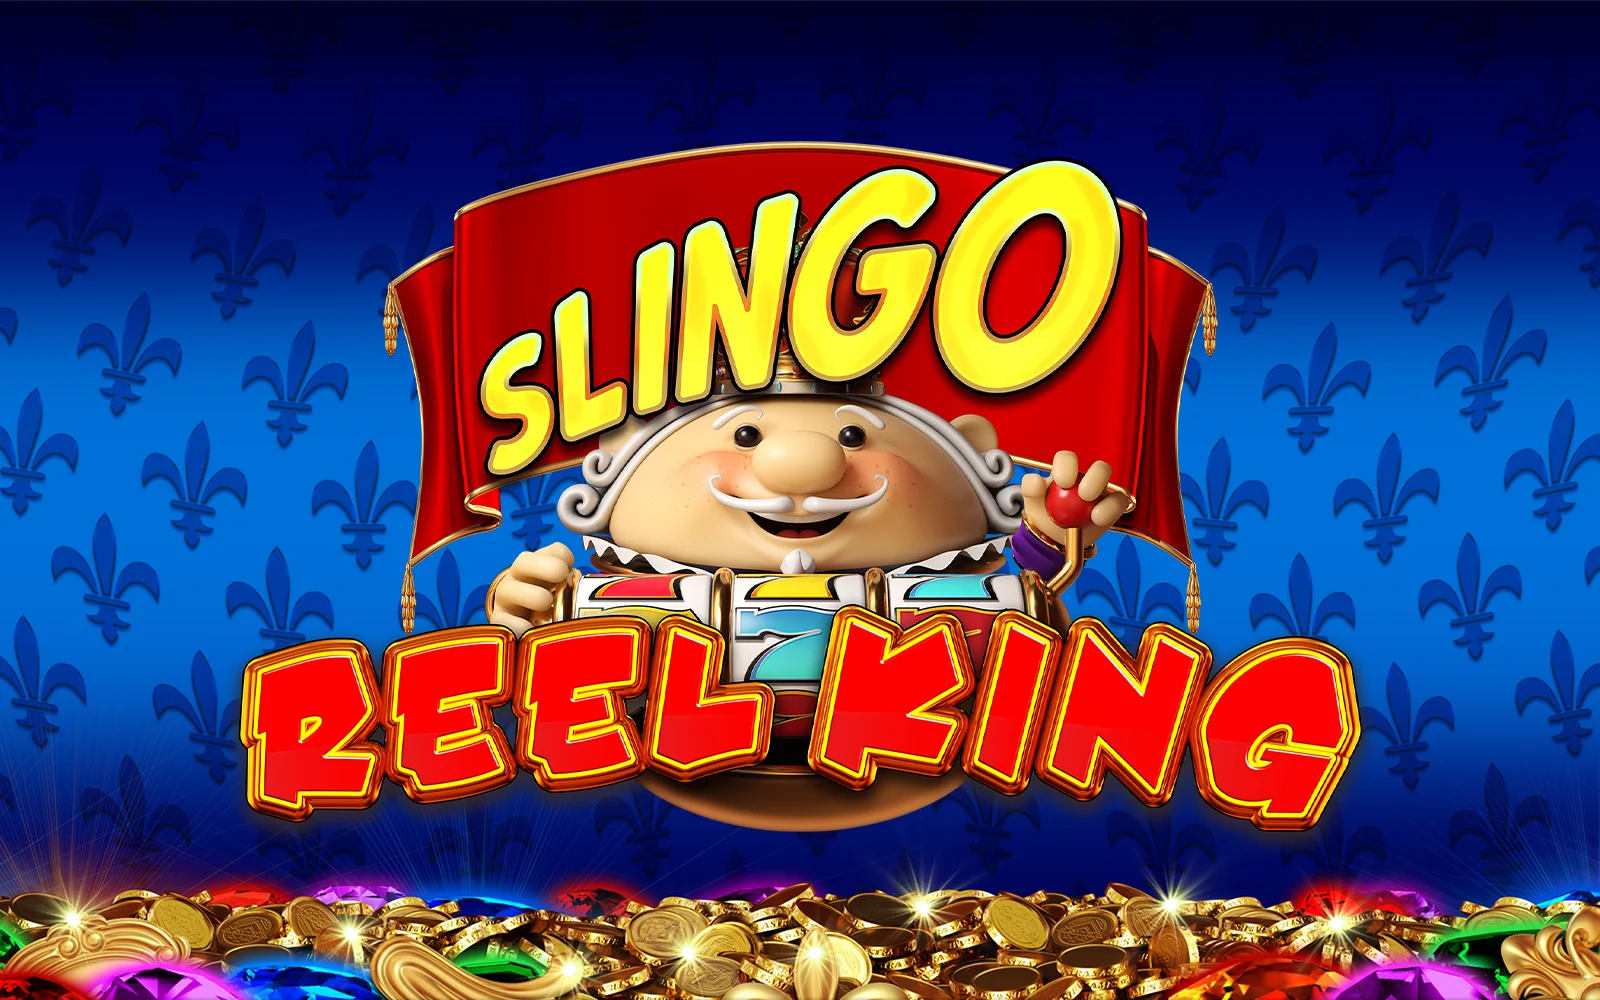 Speel Slingo Reel King op Starcasino.be online casino